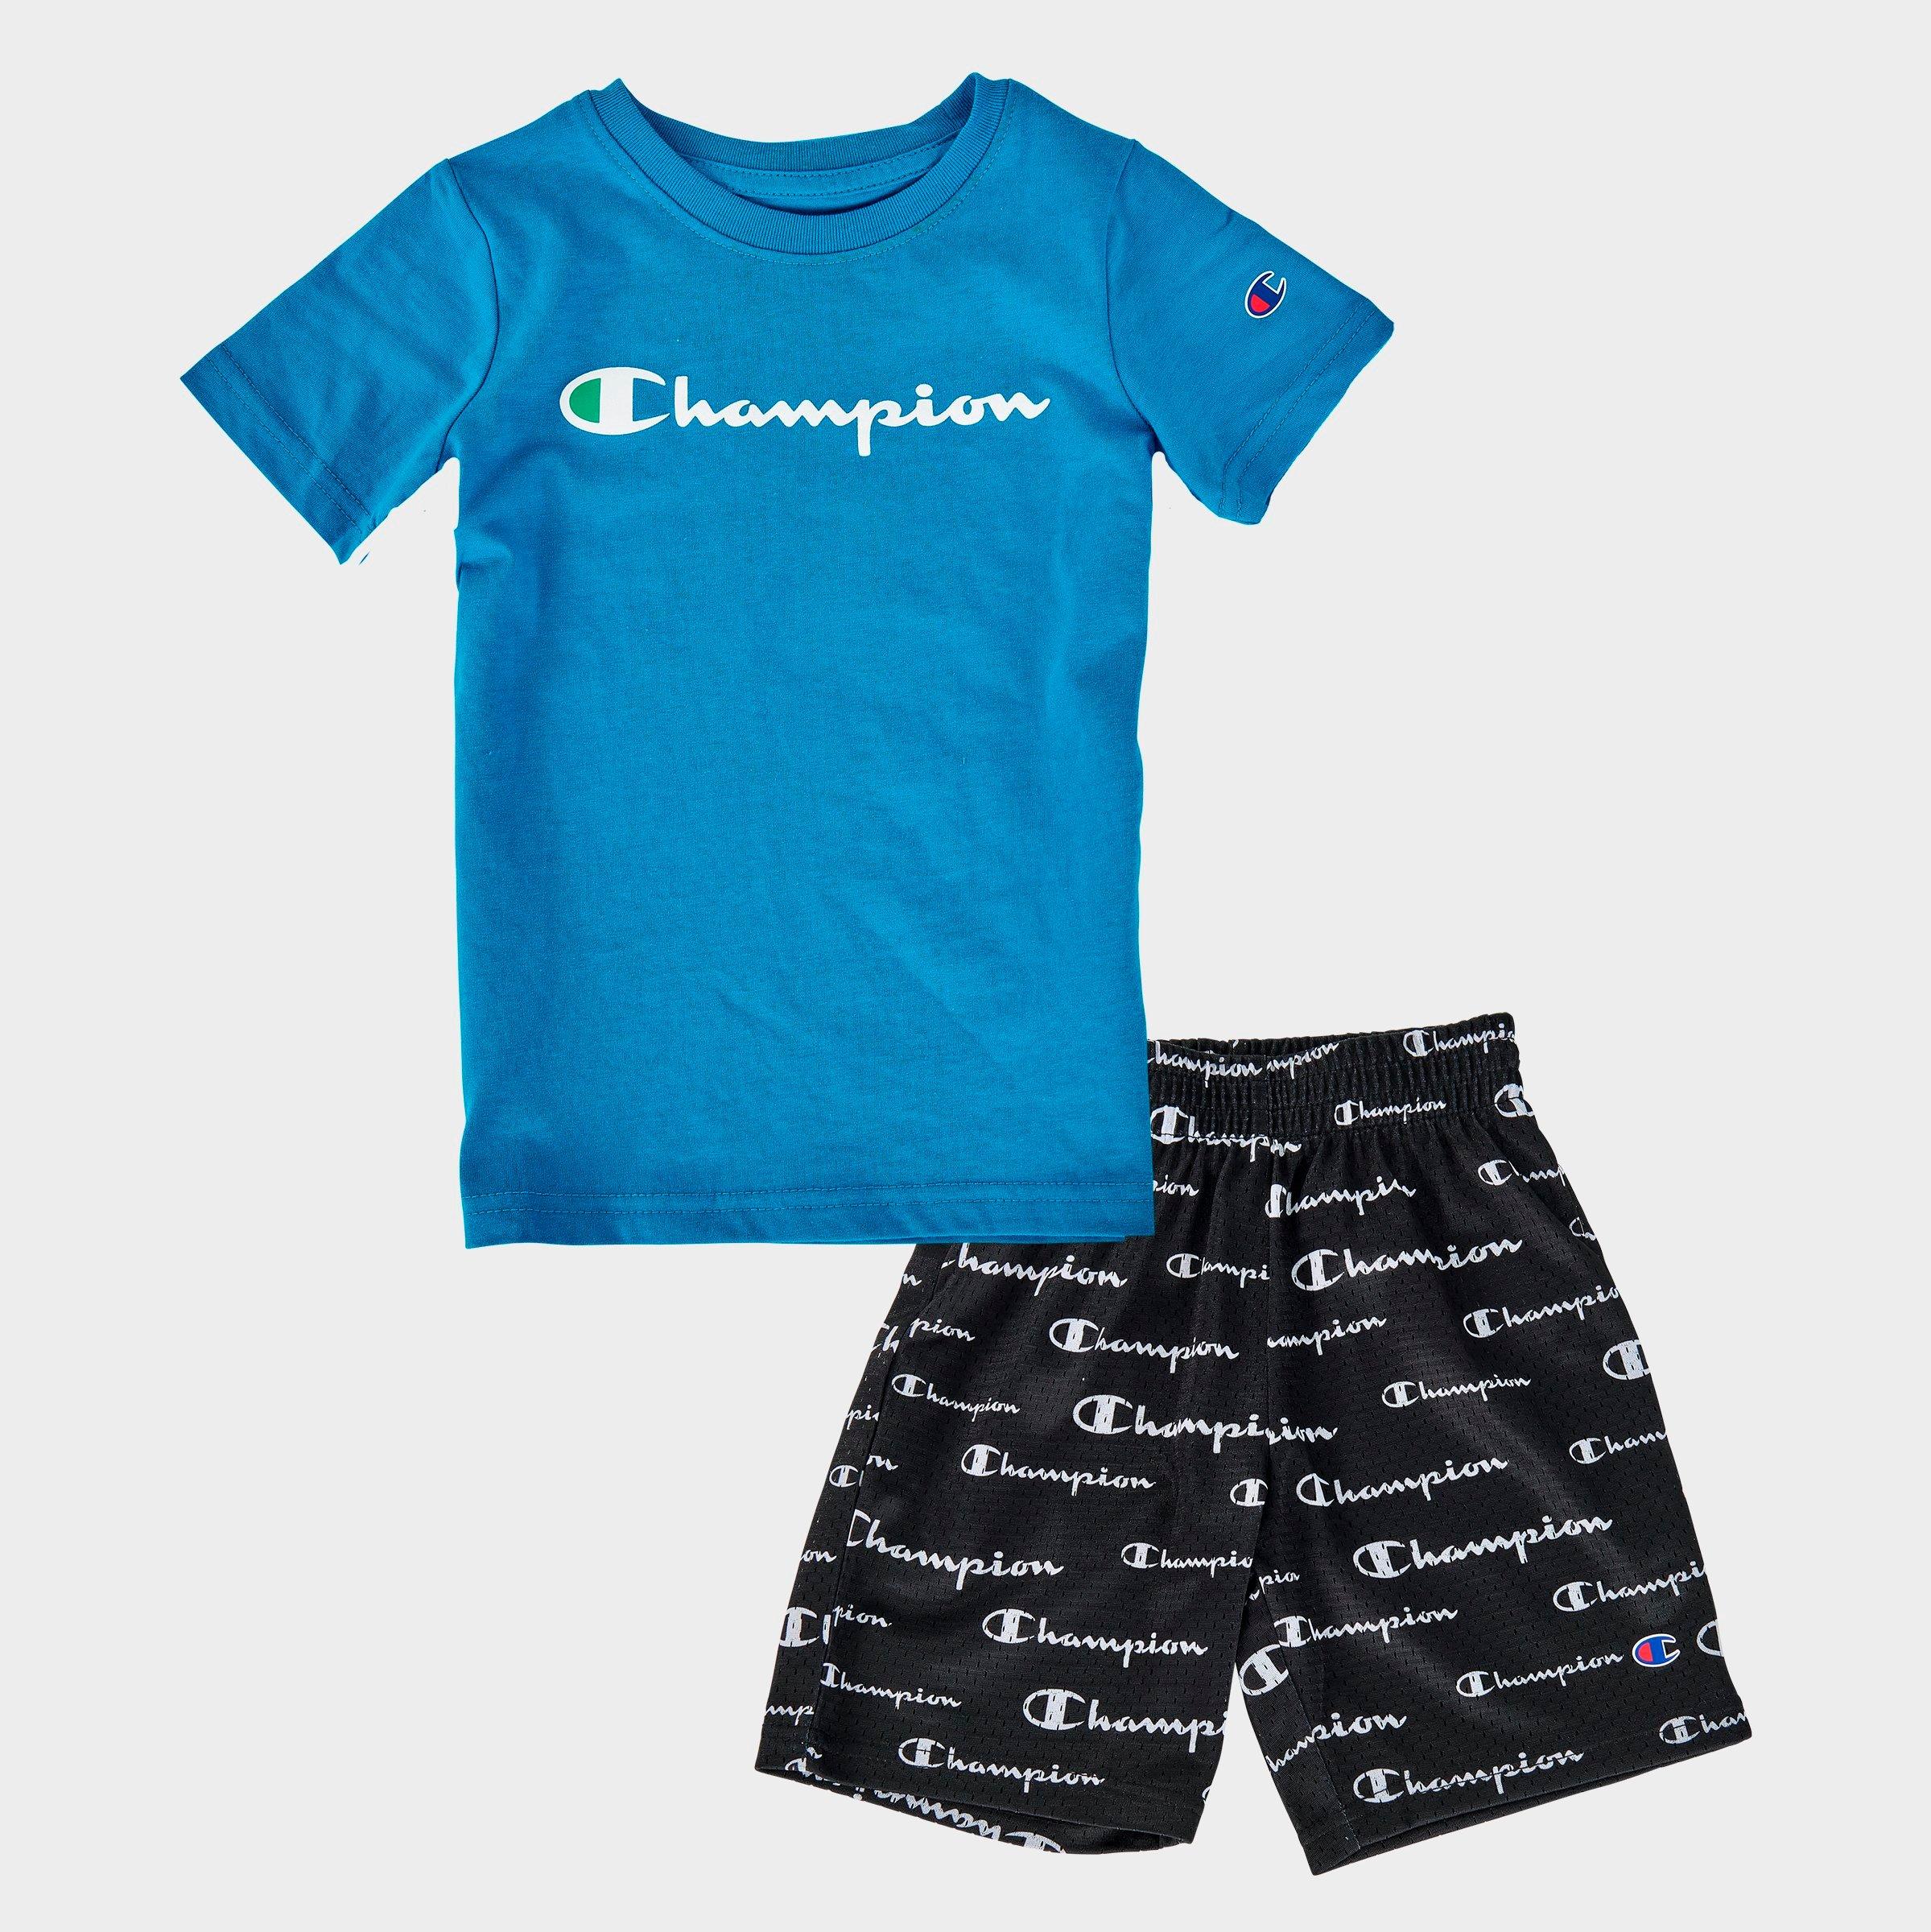 champion shirt and shorts set